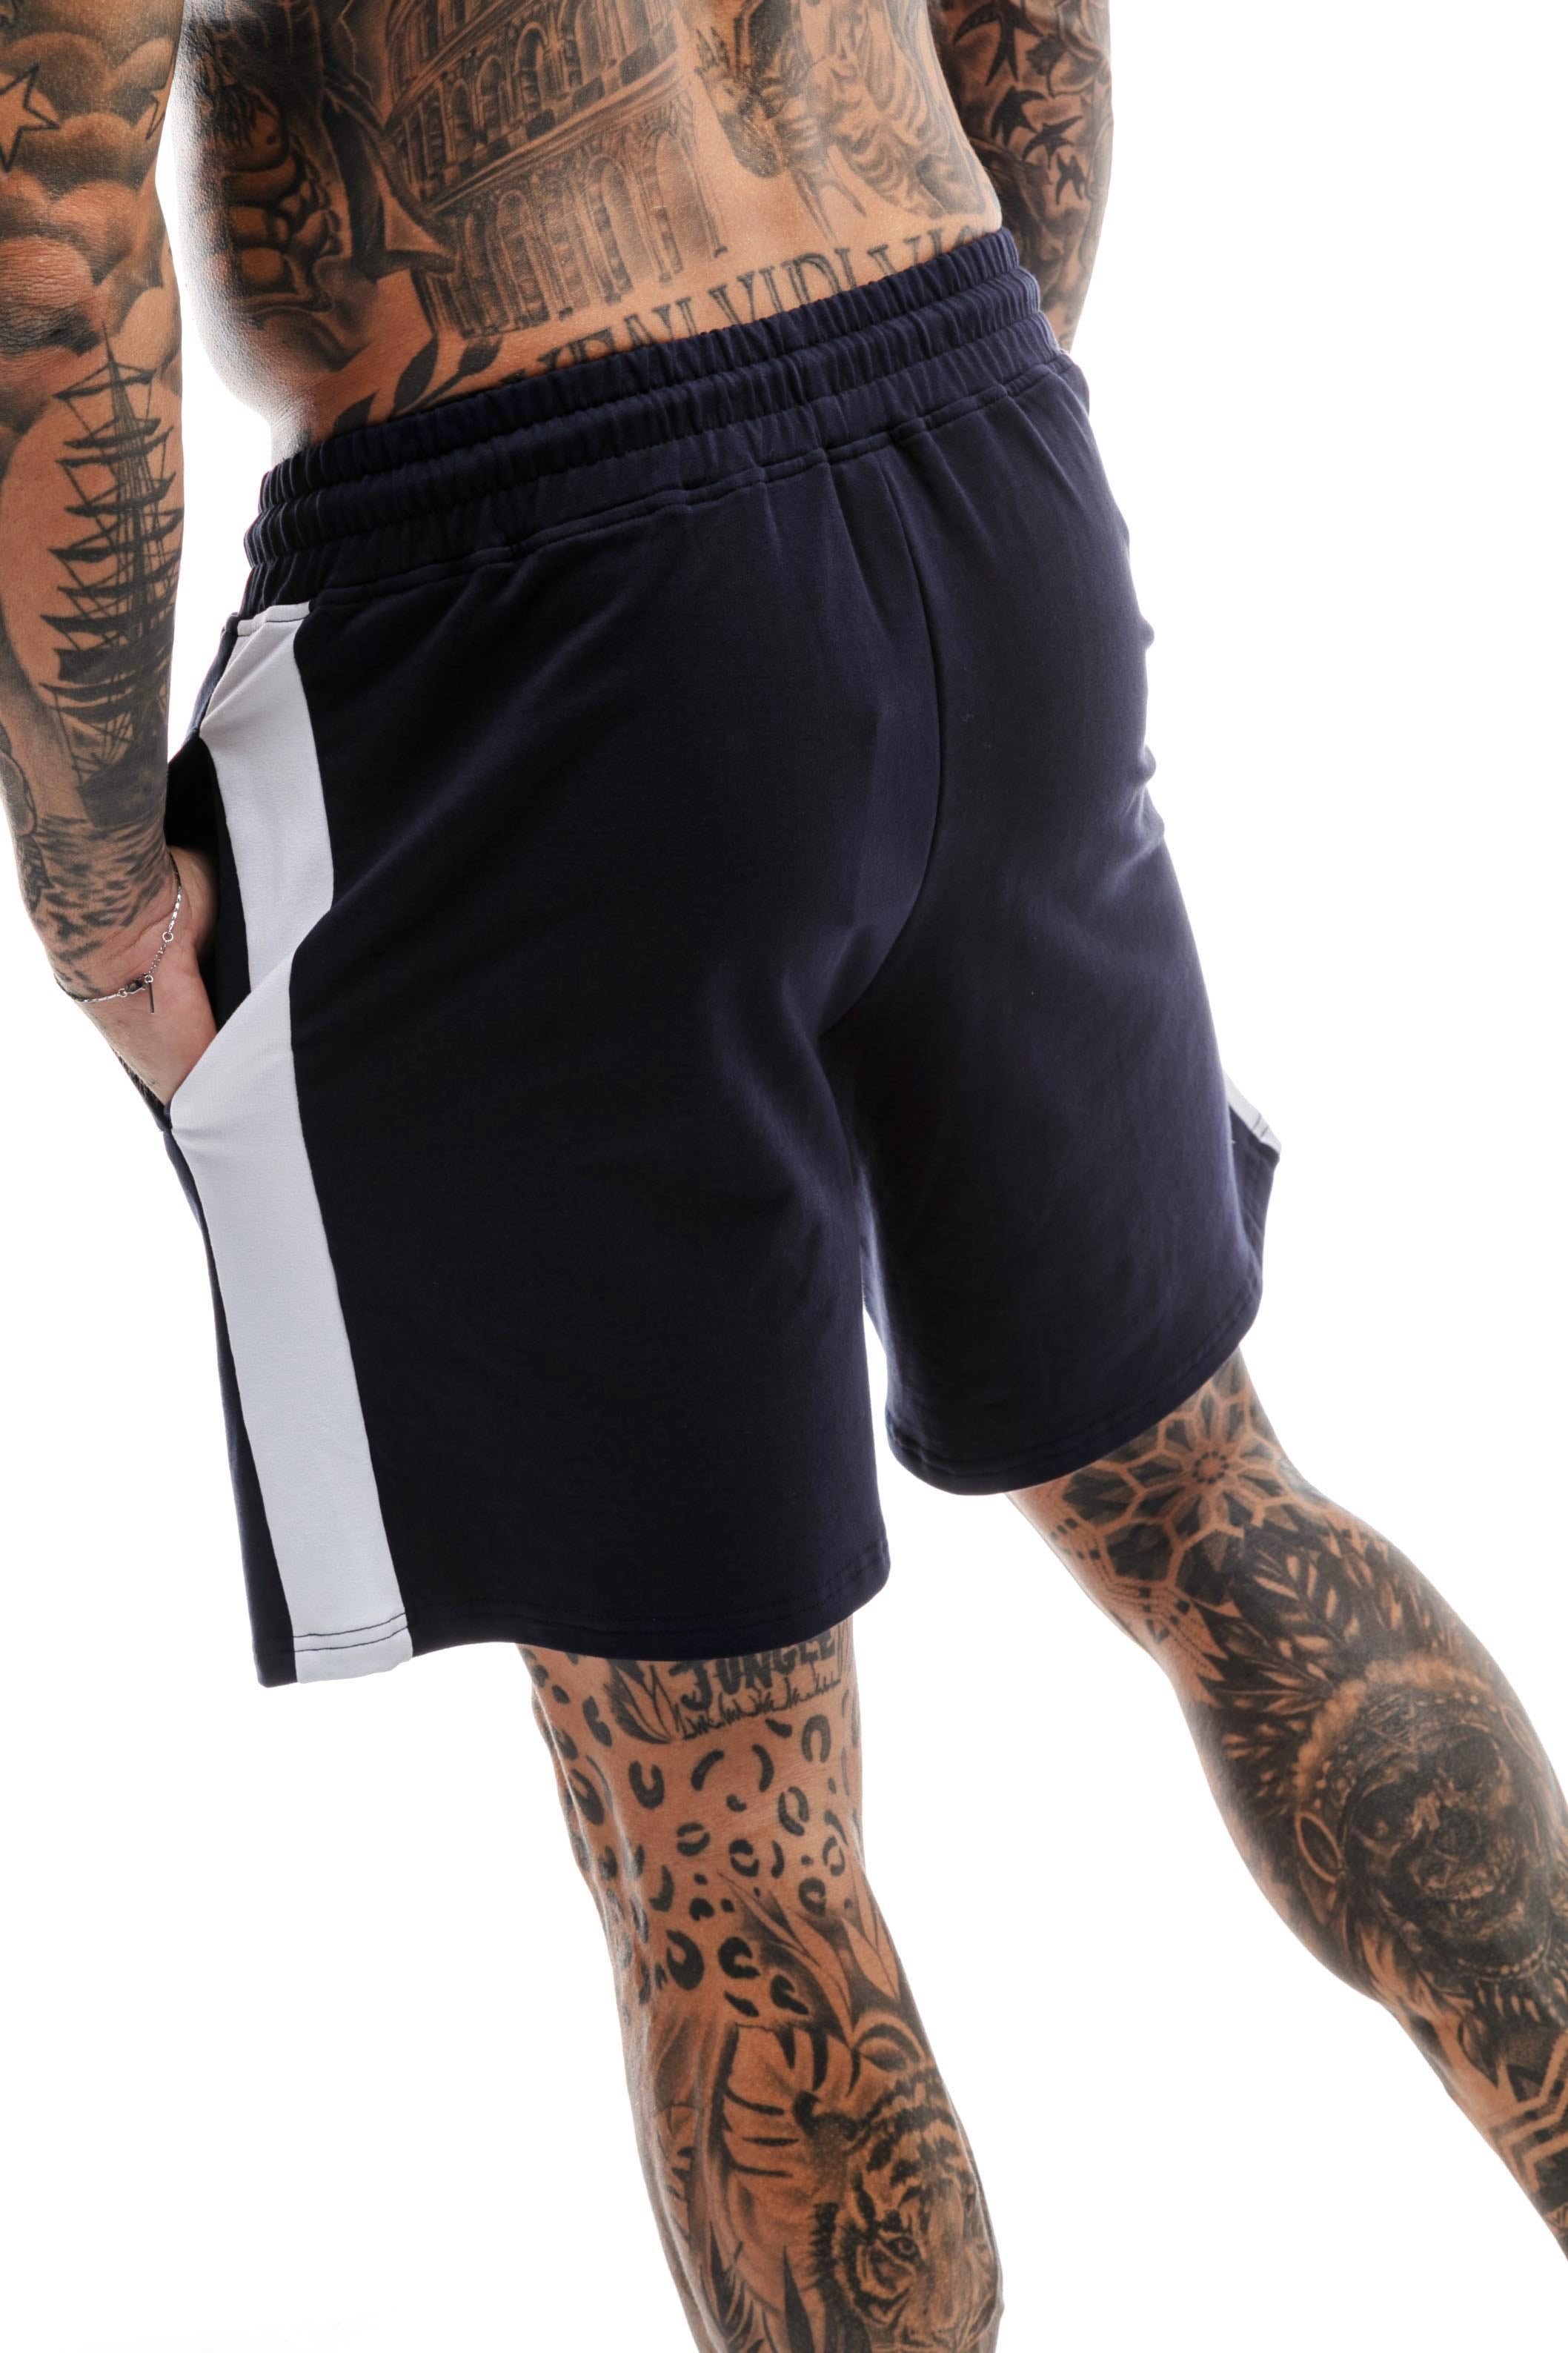 GymFreak Mens Icon Range Shorts - Navy Blue - 7 inch